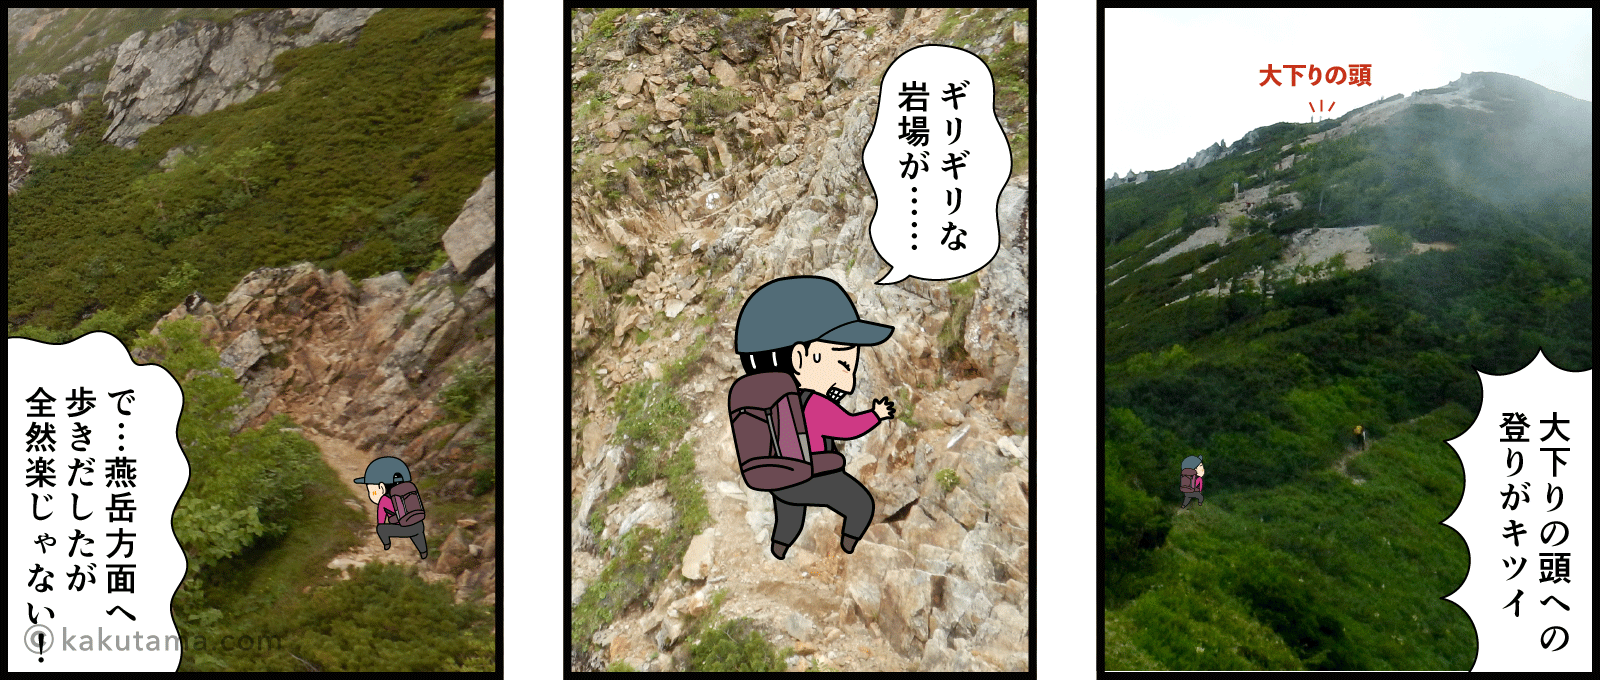 燕岳と常念岳の分岐点でどちらへ行くか迷う漫画2